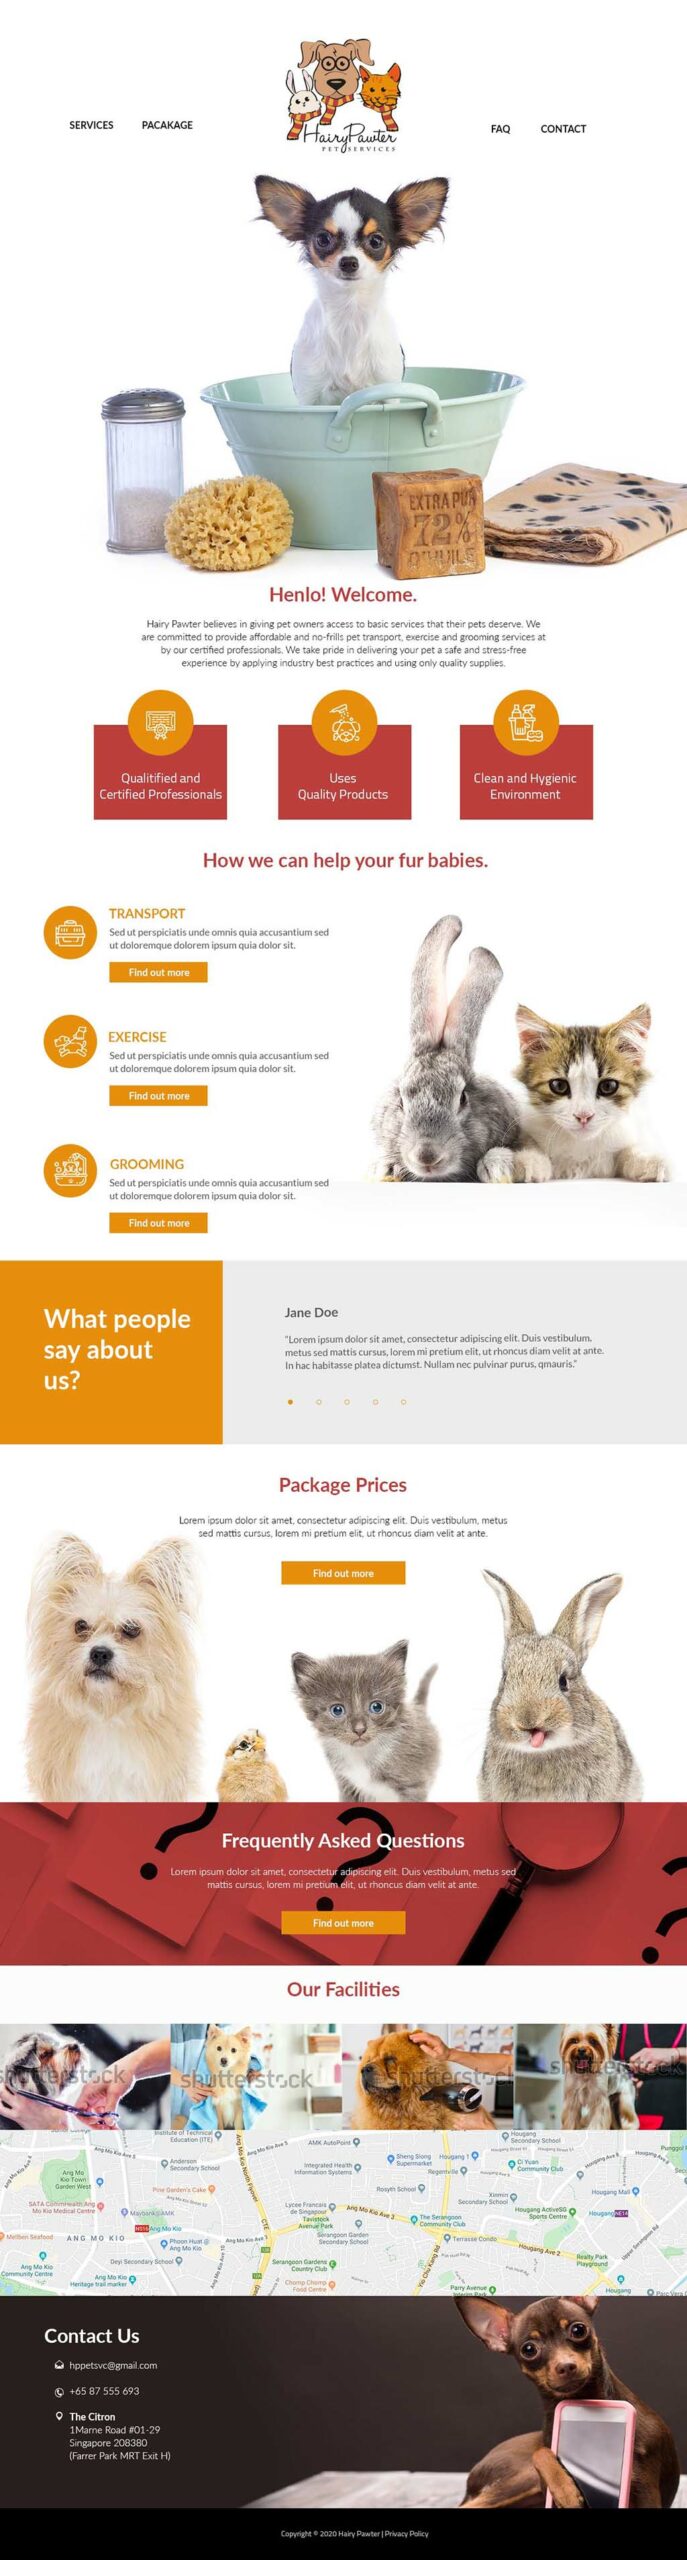 website design for hairy pawter singapore freelance designer